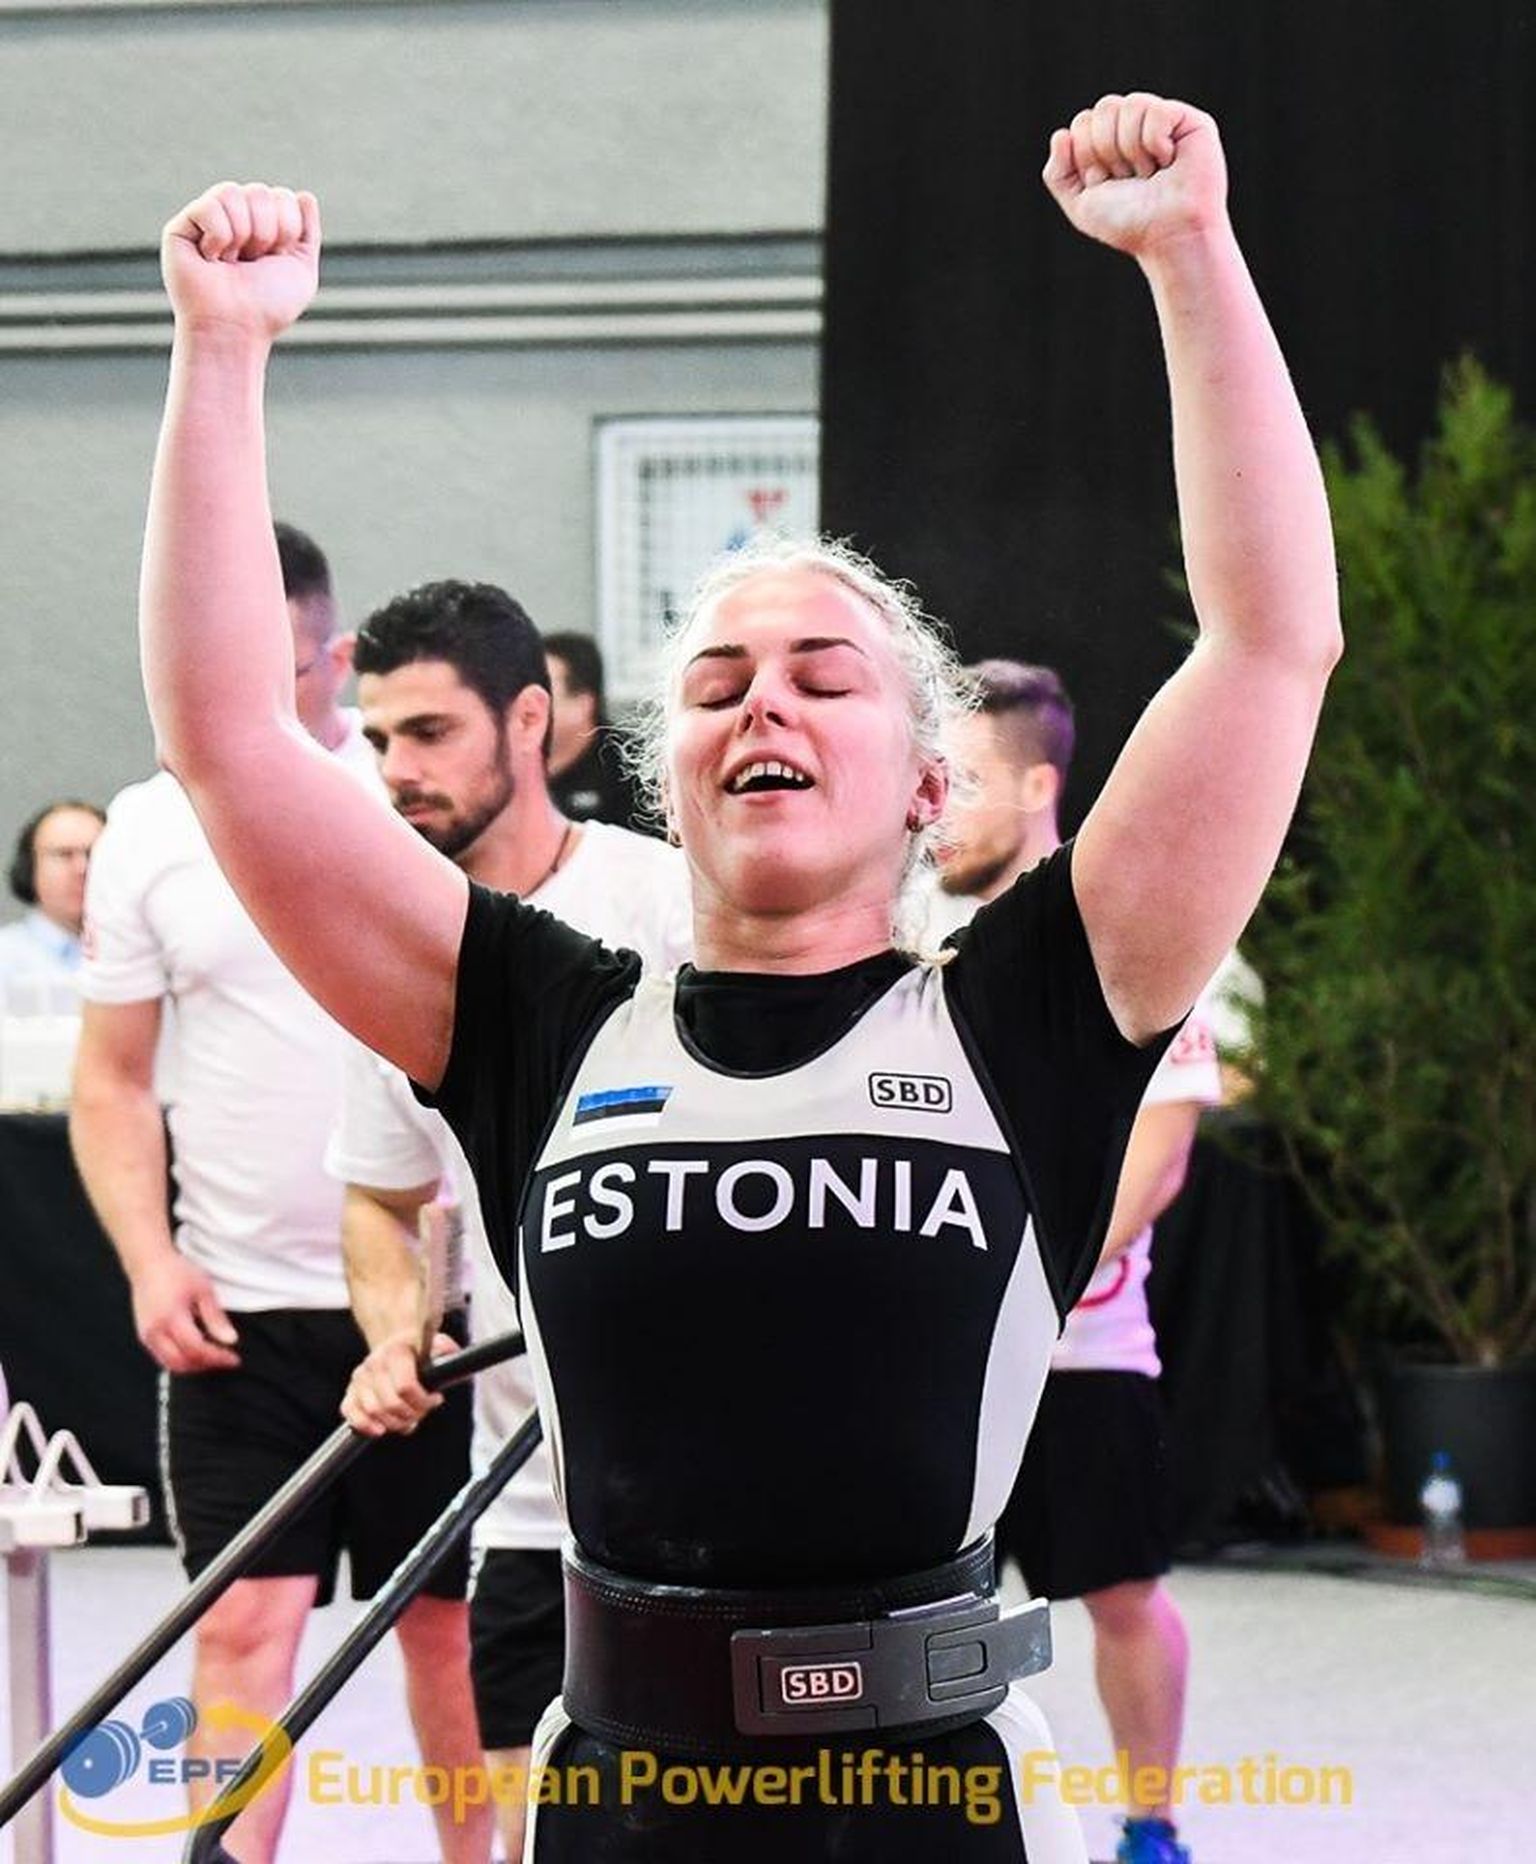 Helena Veelmaa kompab võimete piire ja püstitab jõutõstmises oma kaaluklassis üha uusi Eesti rekordeid.